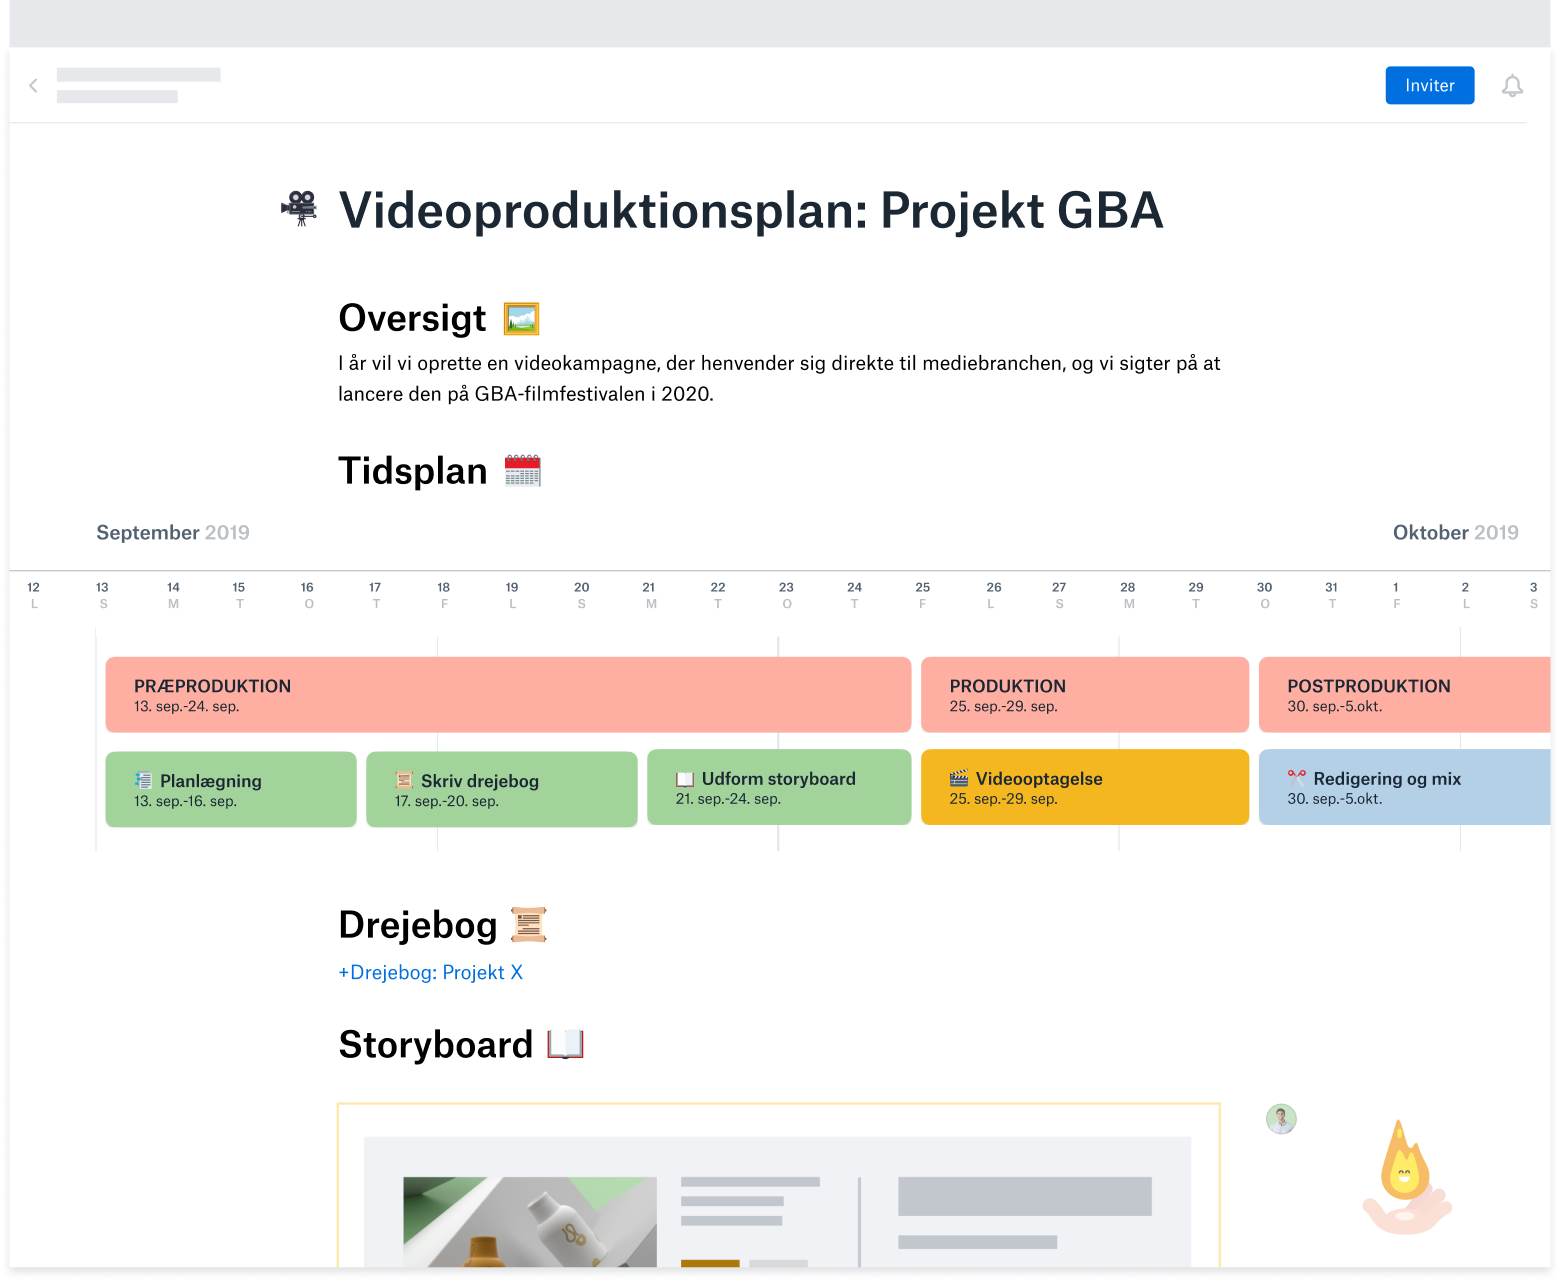 En skabelon til planlægning af videoproduktion, der er oprettet i Dropbox Paper